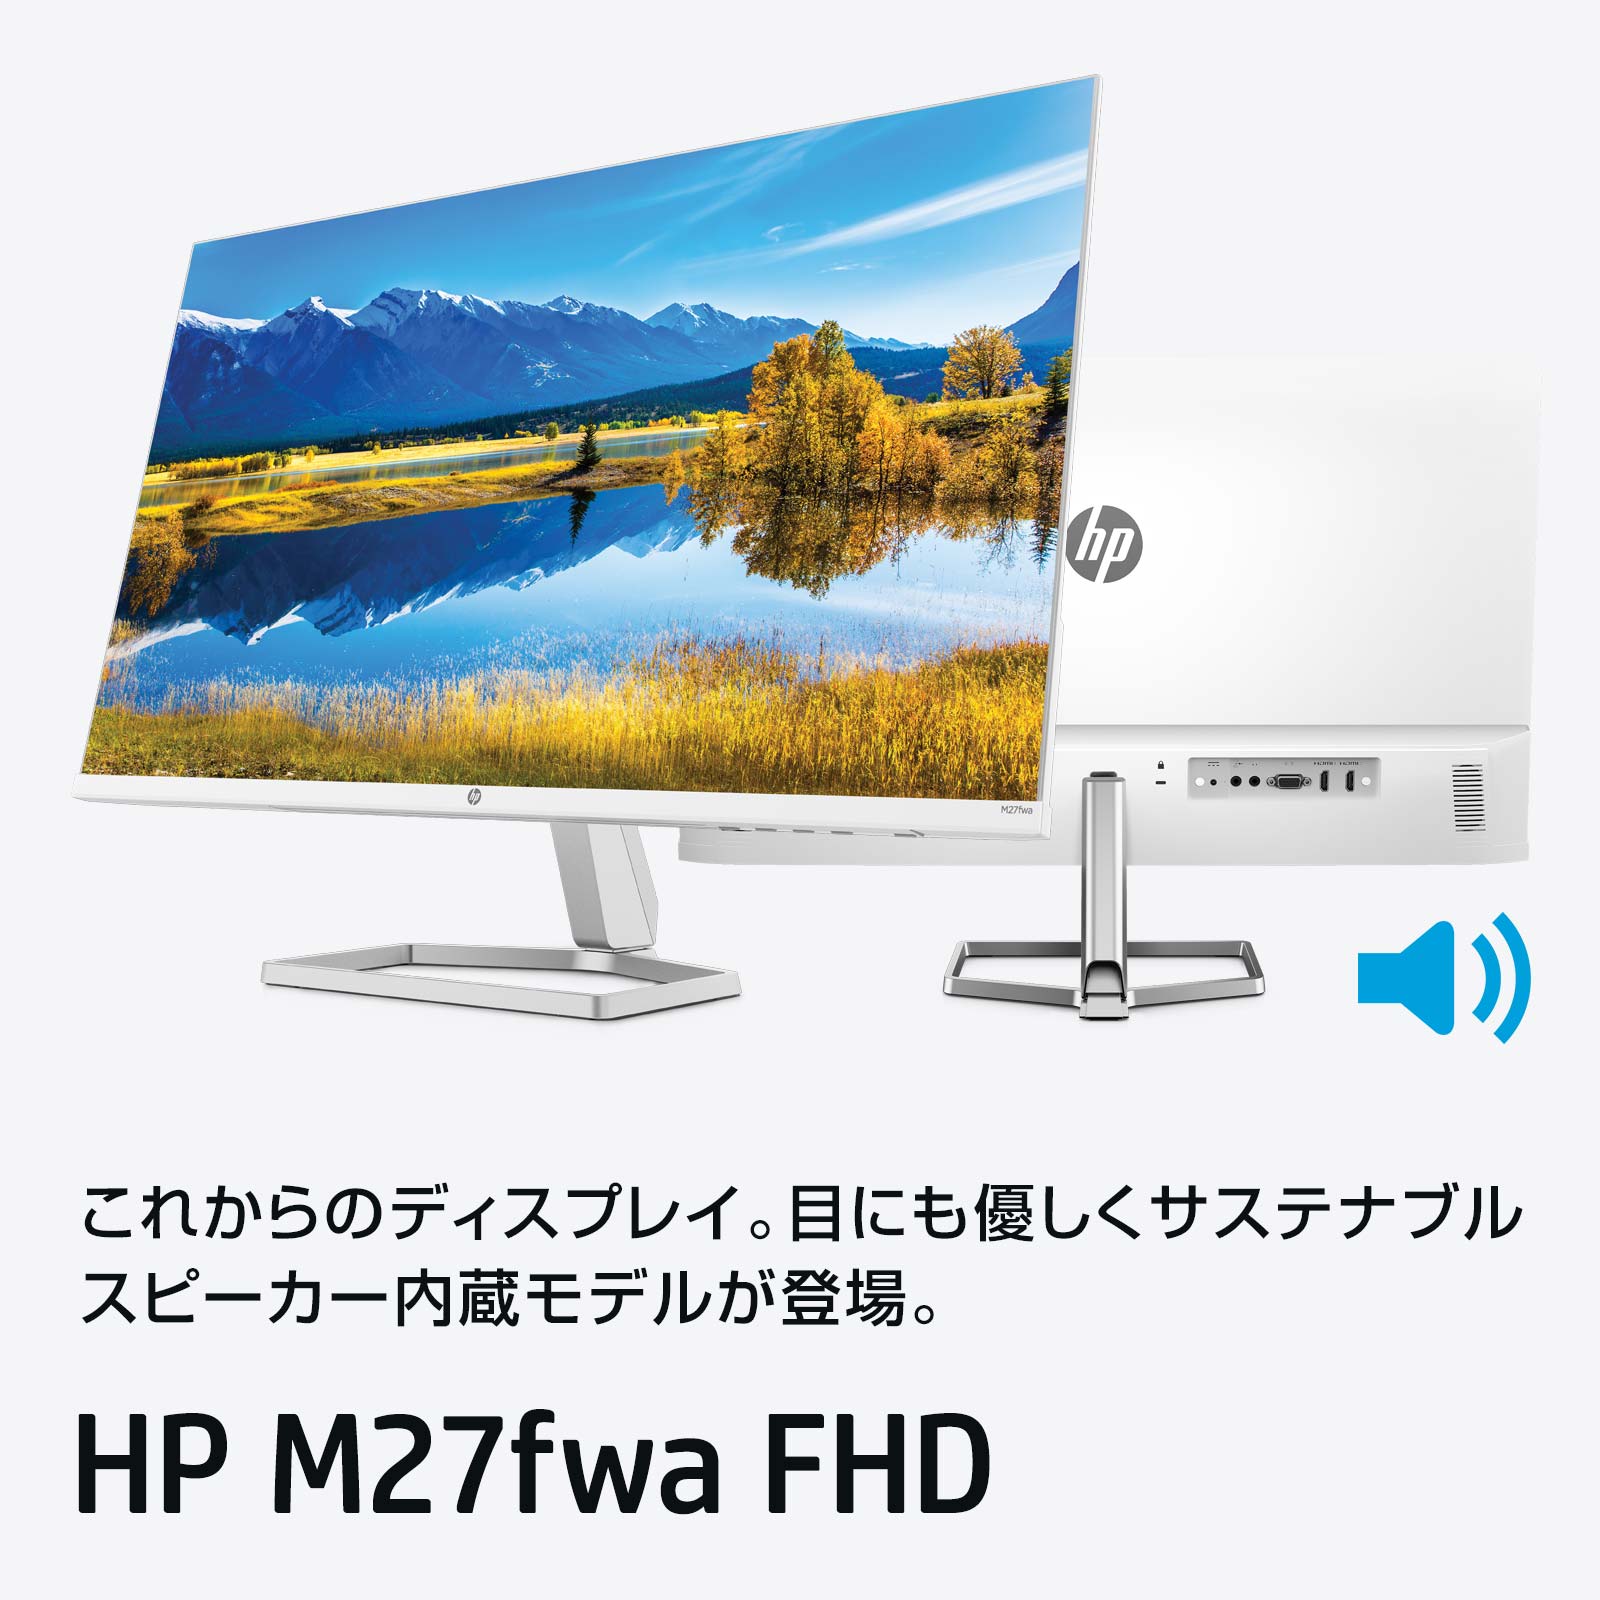 HP M27fwa FHD ディスプレイ(ホワイト・スピーカー付き)